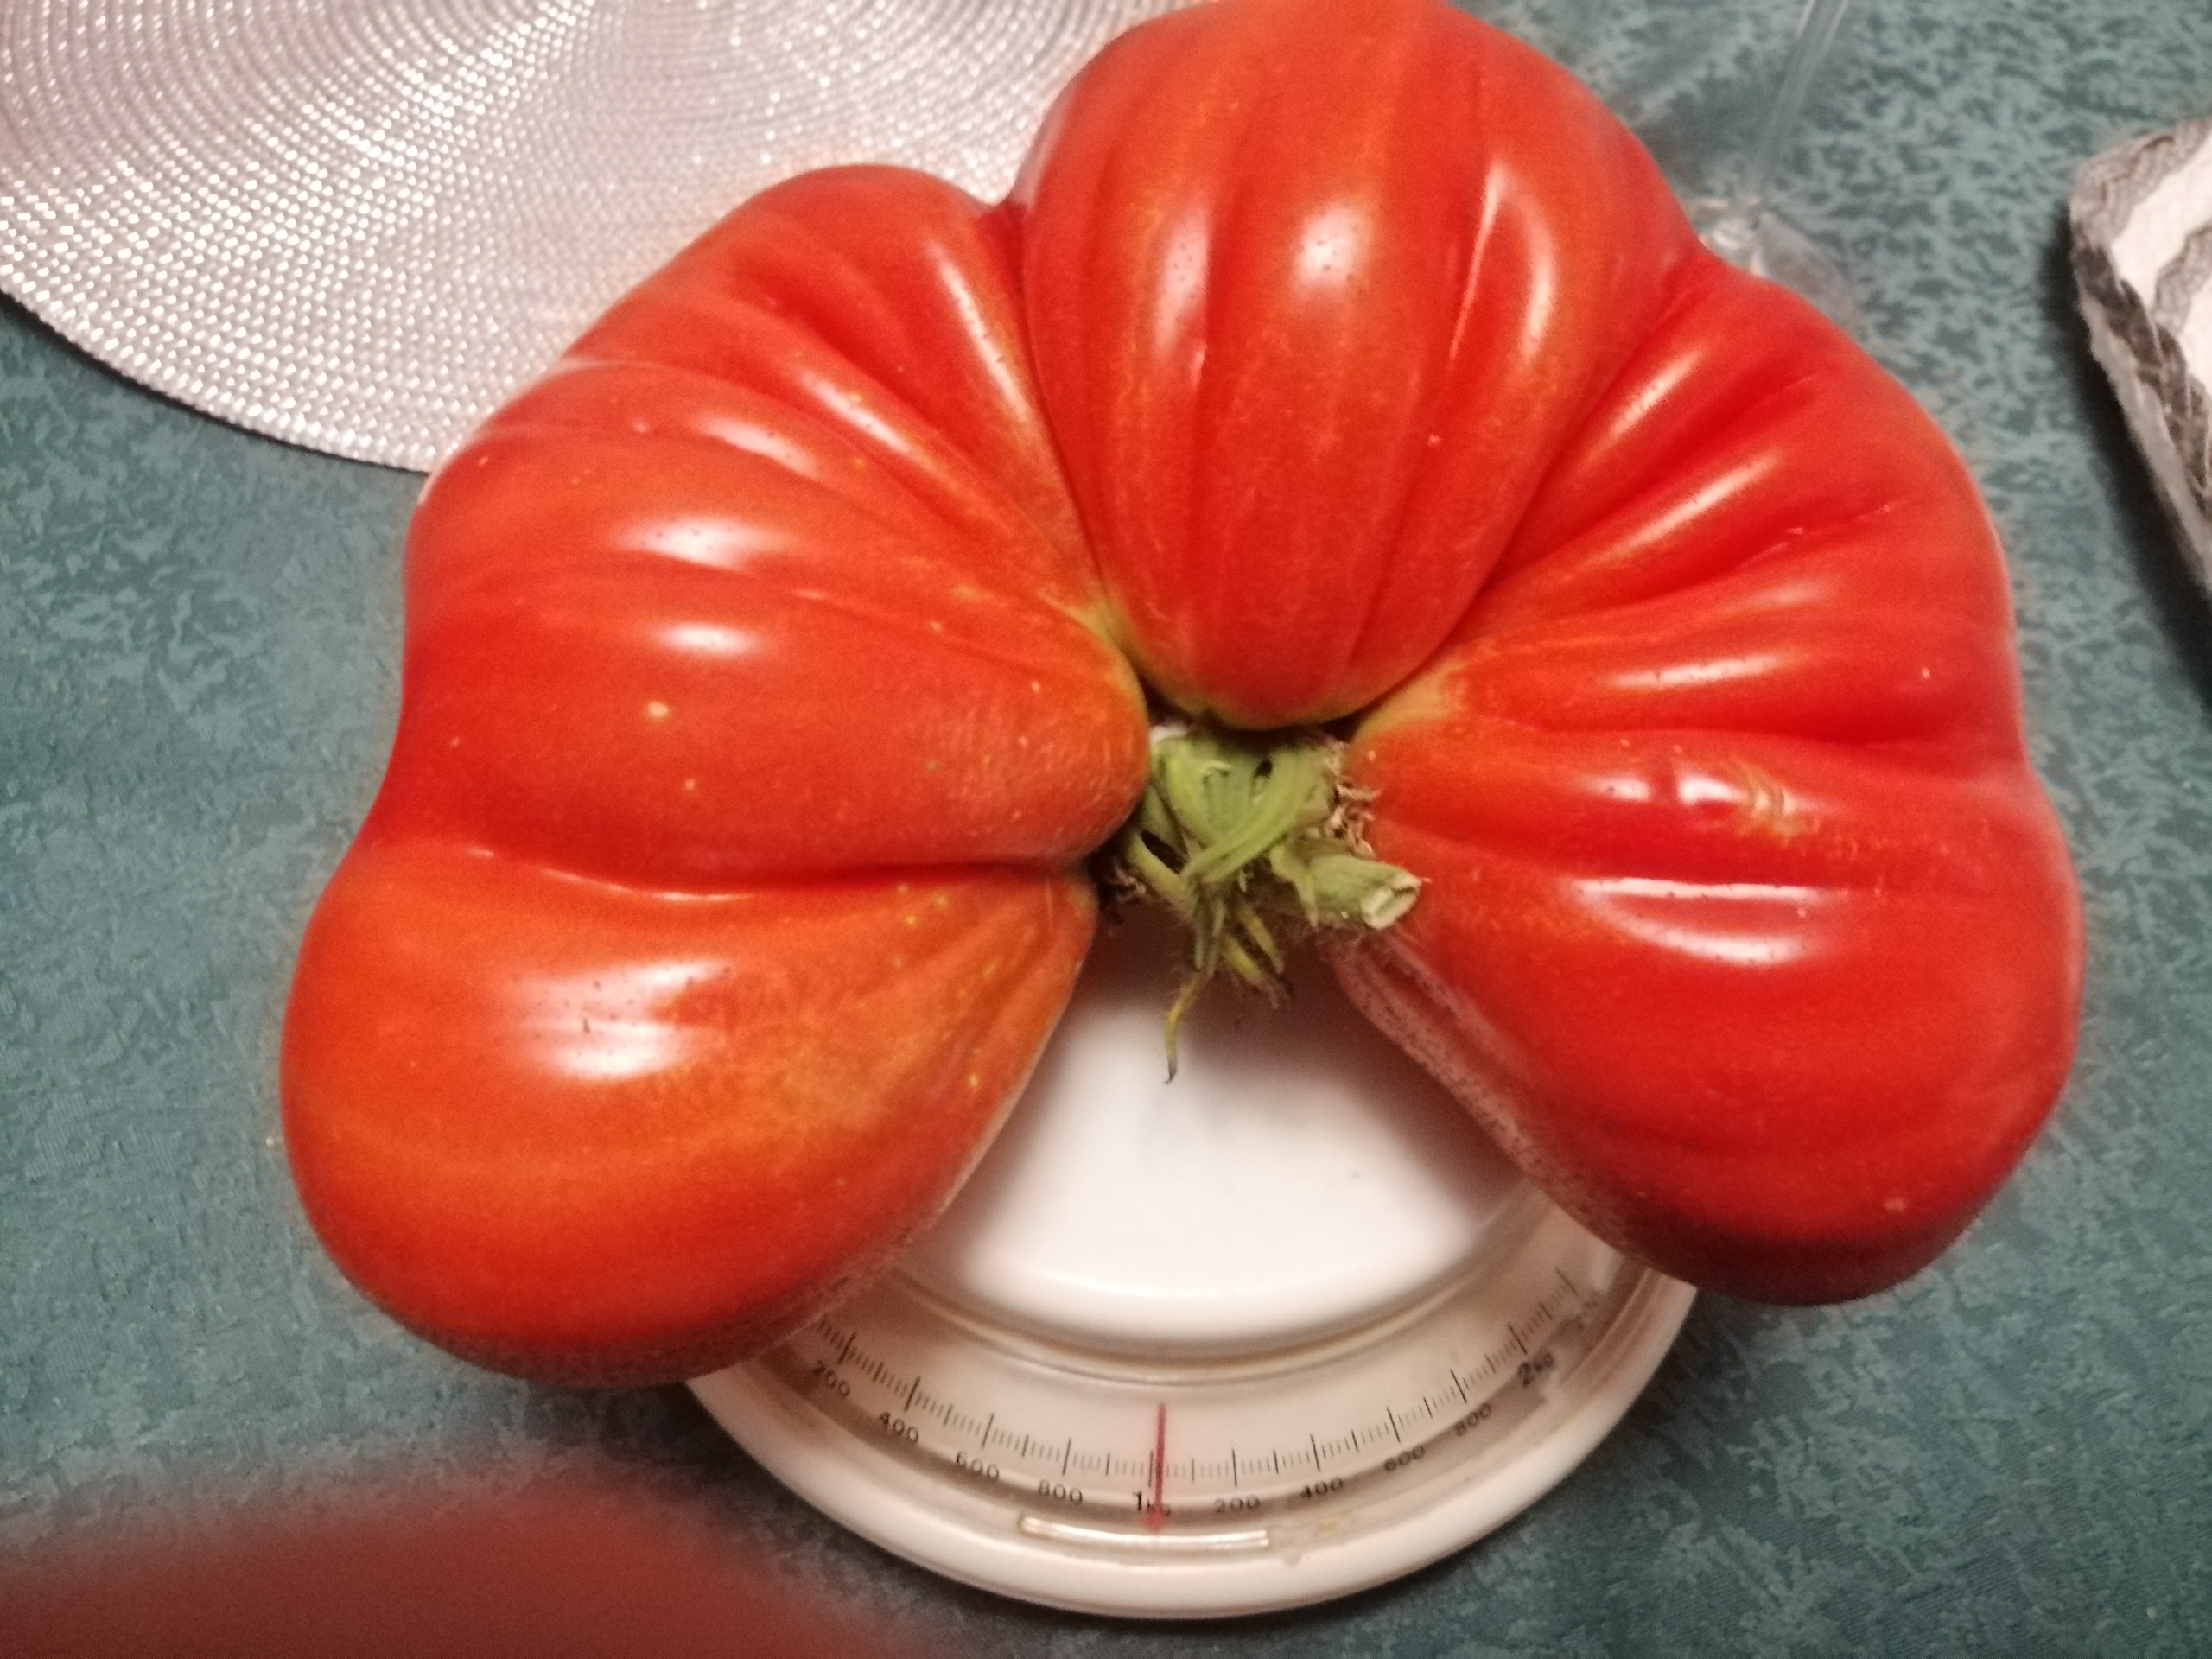 Pomidor waży równy kilogram